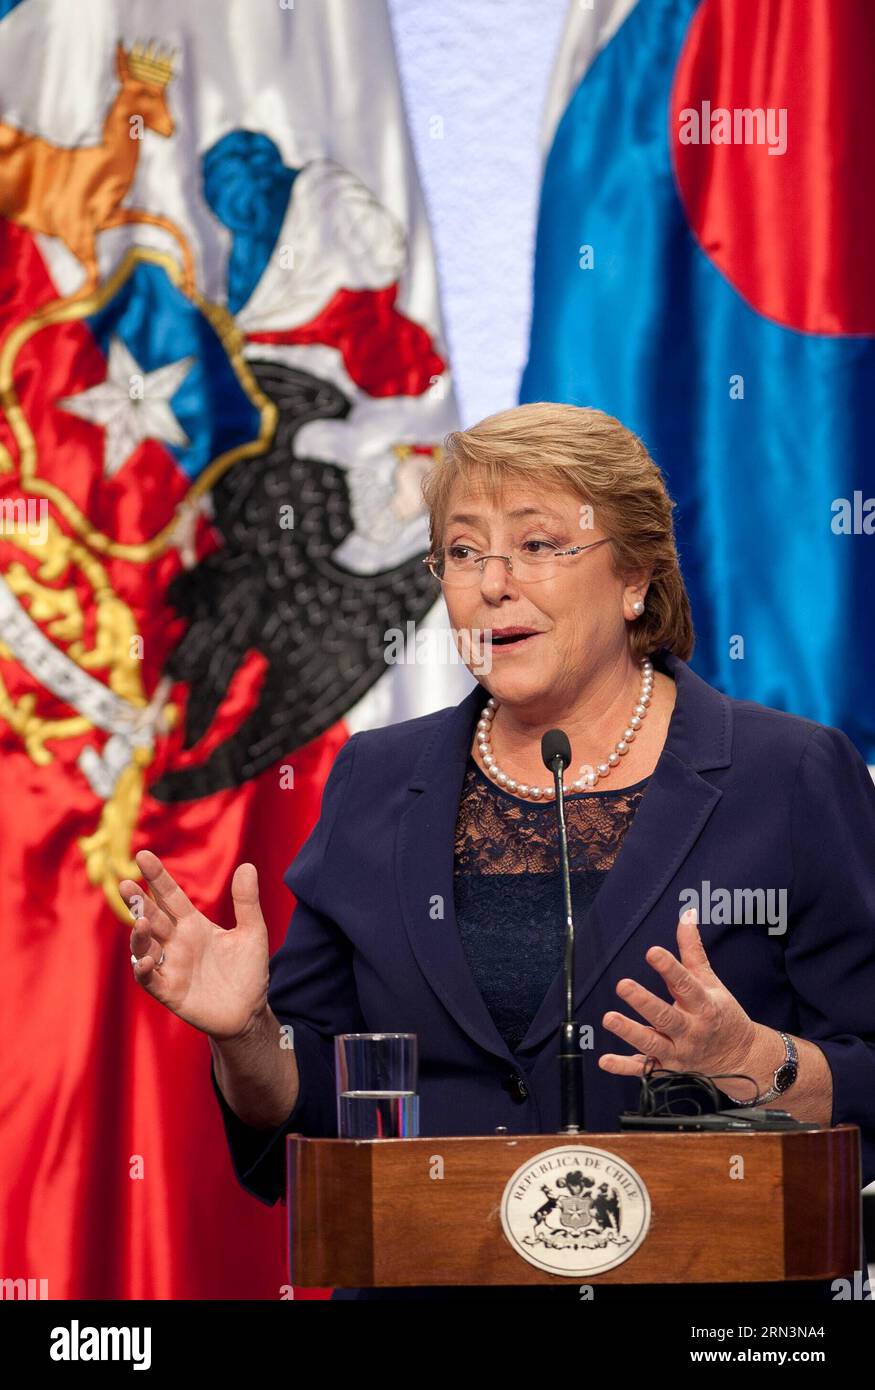 (150422) -- SANTIAGO, 22. April 2015 -- die chilenische Präsidentin Michelle Bachelet nimmt am 22. April 2015 an einer gemeinsamen Pressekonferenz mit dem südkoreanischen Präsidenten Park Geun-hye (nicht im Bild) Teil. Jorge Villegas) (jg) CHILE-SANTIAGO-SÜDKOREA-POLITICS-VISIT e JORGExVILLEGAS PUBLICATIONxNOTxINxCHN Santiago 22. April 2015 chilenische Präsidentin Michelle Bachelet nimmt an einer gemeinsamen Pressekonferenz mit dem südkoreanischen Präsidenten Park Geun Hye Not in the Picture nach der Unterzeichnung des Abkommens in La Moneda Pa Teil Stockfoto